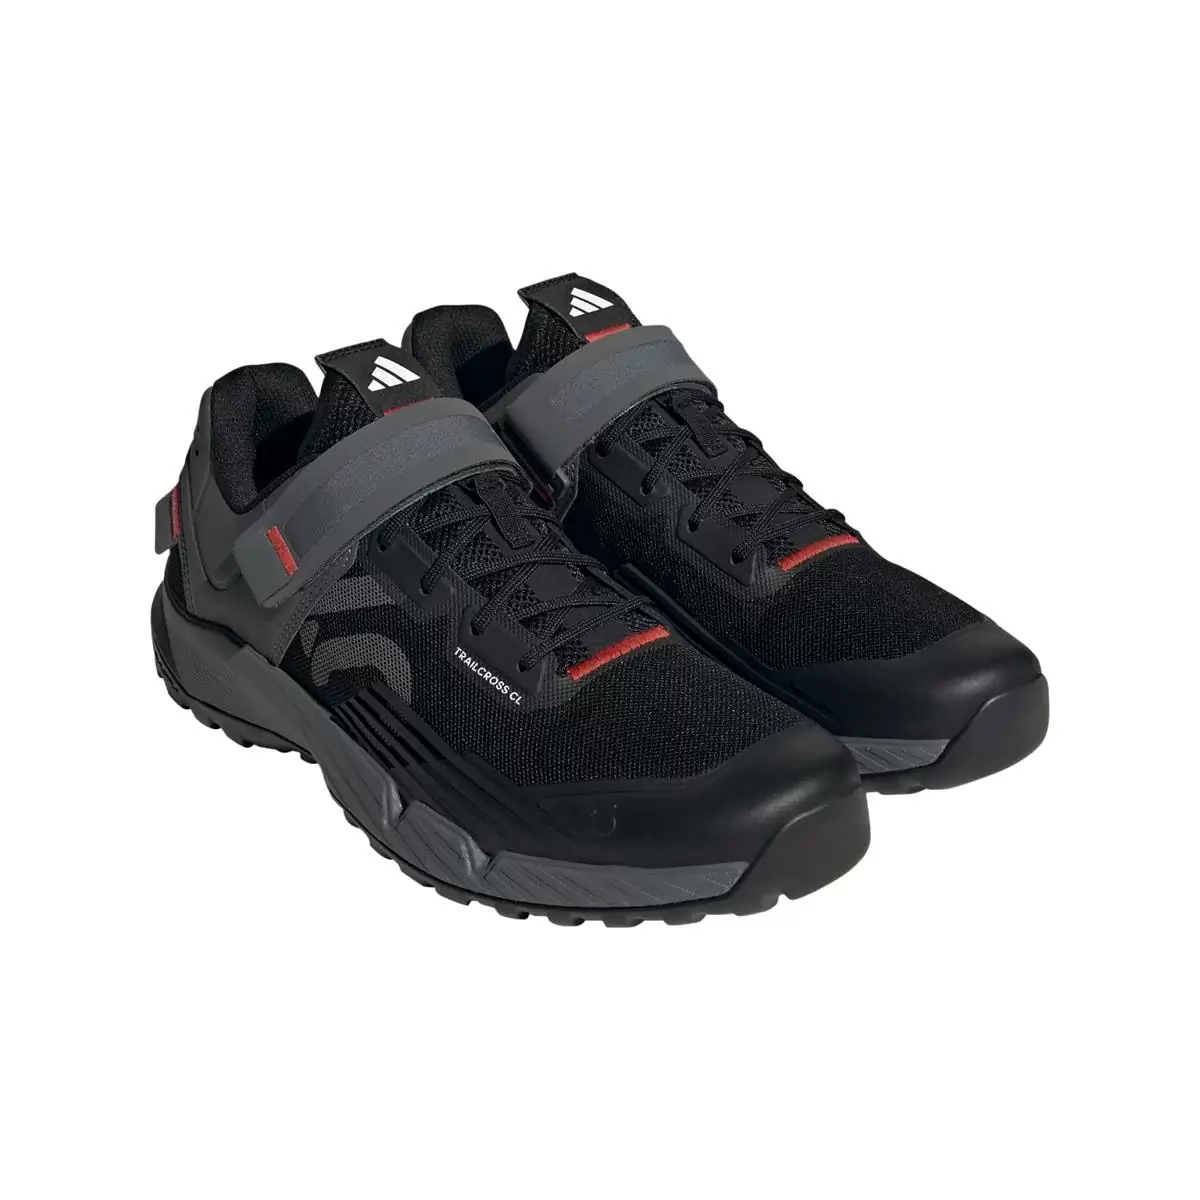 Clip 5.10 Trailcross MTB Shoes Black/Grey Size 40 #1